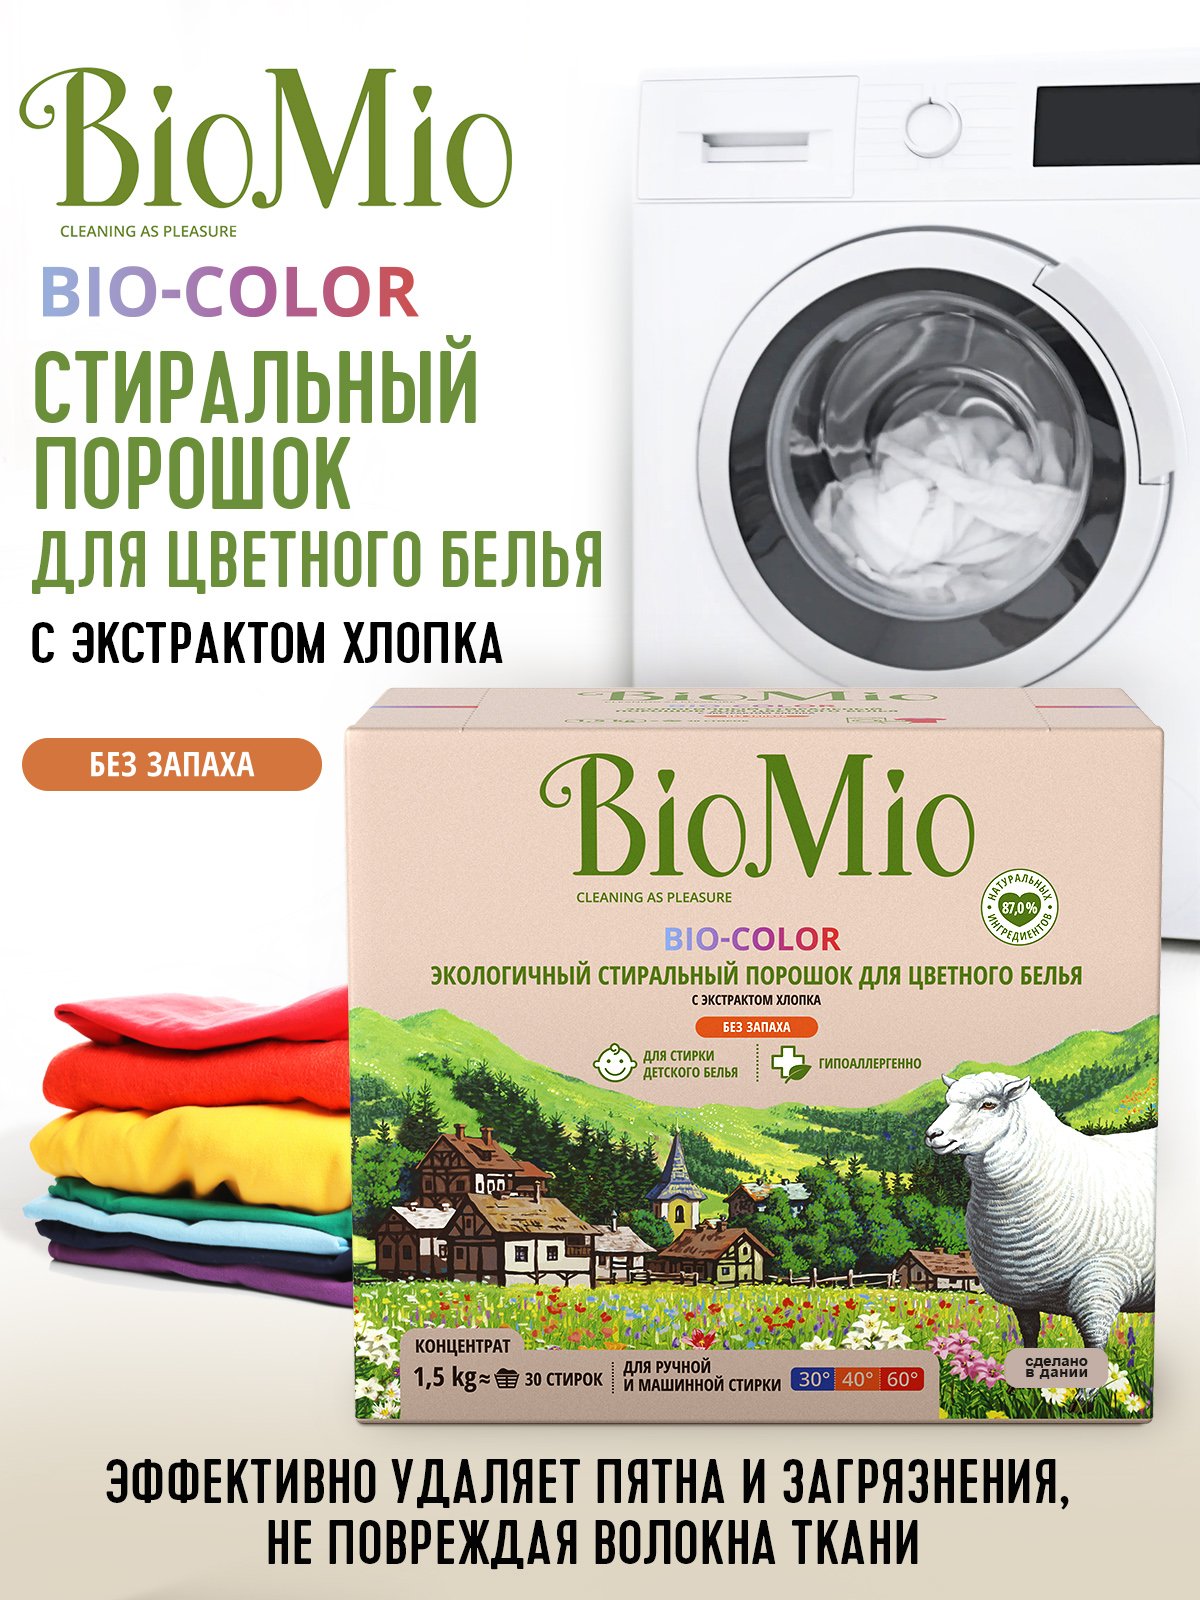 Стиральный порошок для цветного белья BioMio Bio-Color, концентрат, 1,5 кг - фото 4